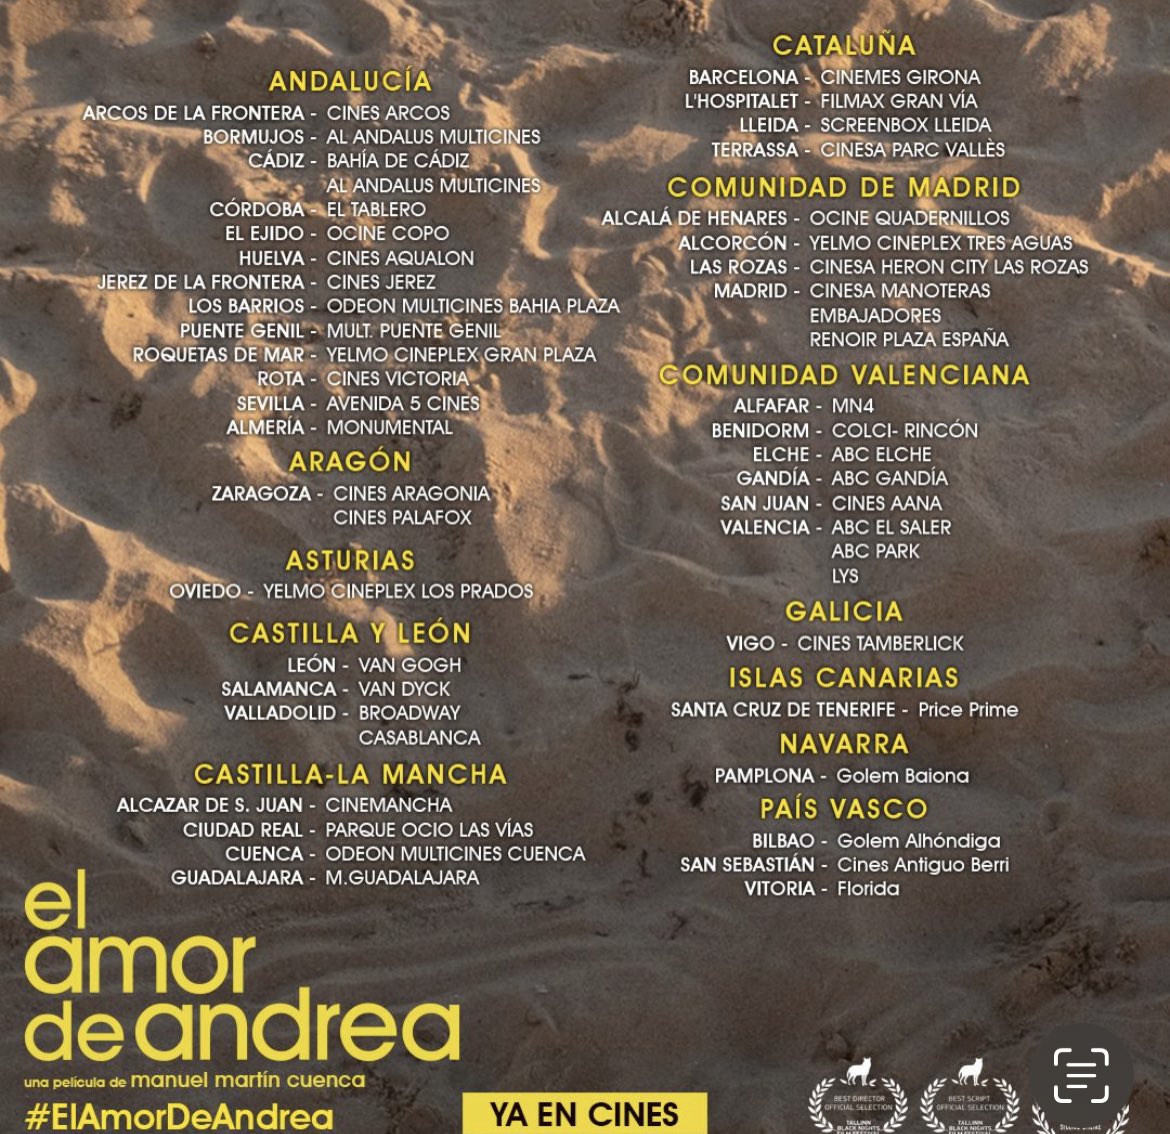 Nos recomiendan encarecidamente una nueva película española
#ElAmorDeAndrea 
De #ManuelMartinCuenca
@lalomablanca 
Pues la veremos‼️